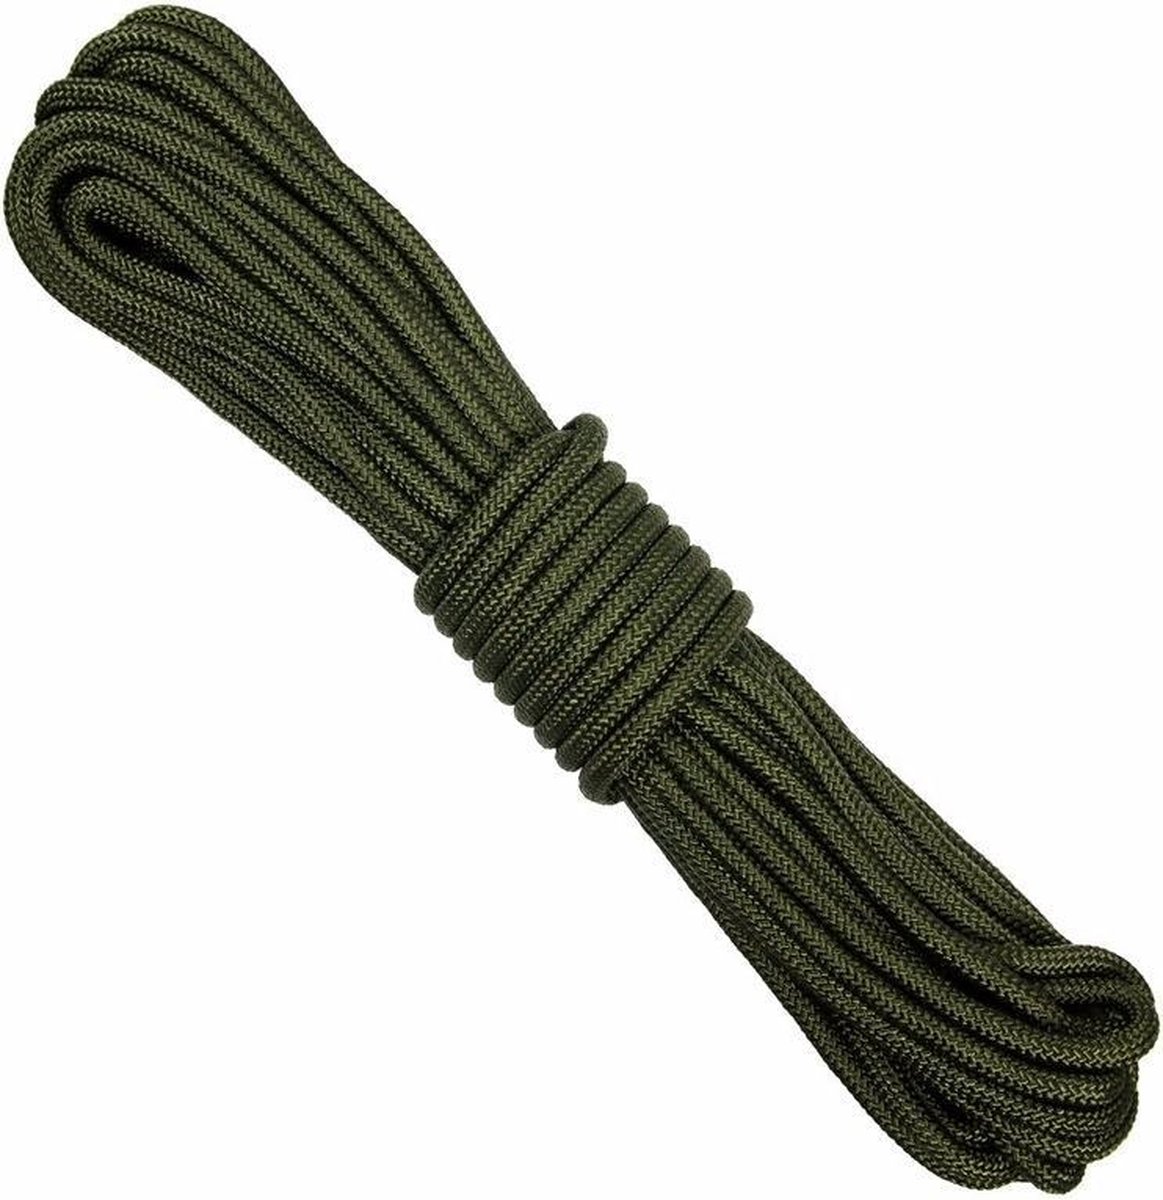 2x Stevige outdoor touwen/koorden 9 mm 15 meter - Scheerlijnen - Camping/kampeer artikelen - Merkloos